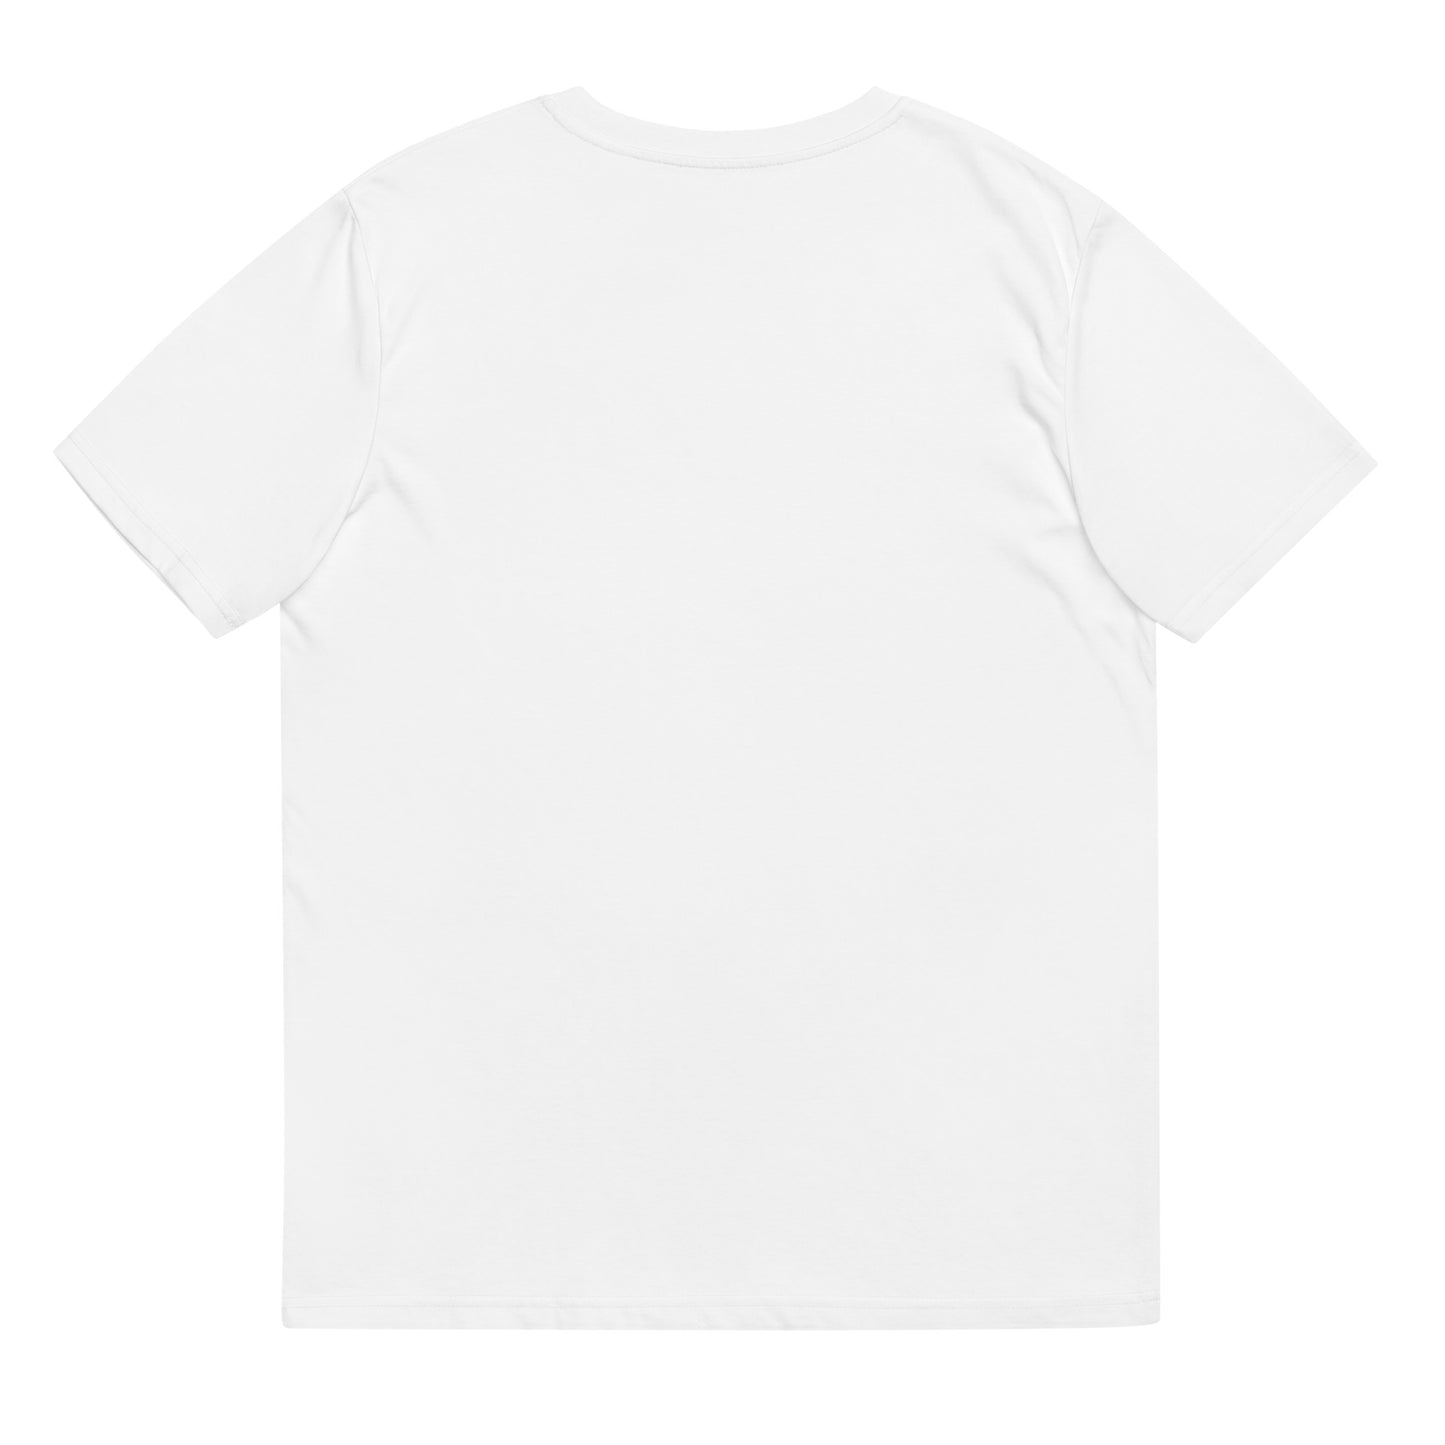 Jada dans les étoiles - T-shirt unisexe en coton biologique